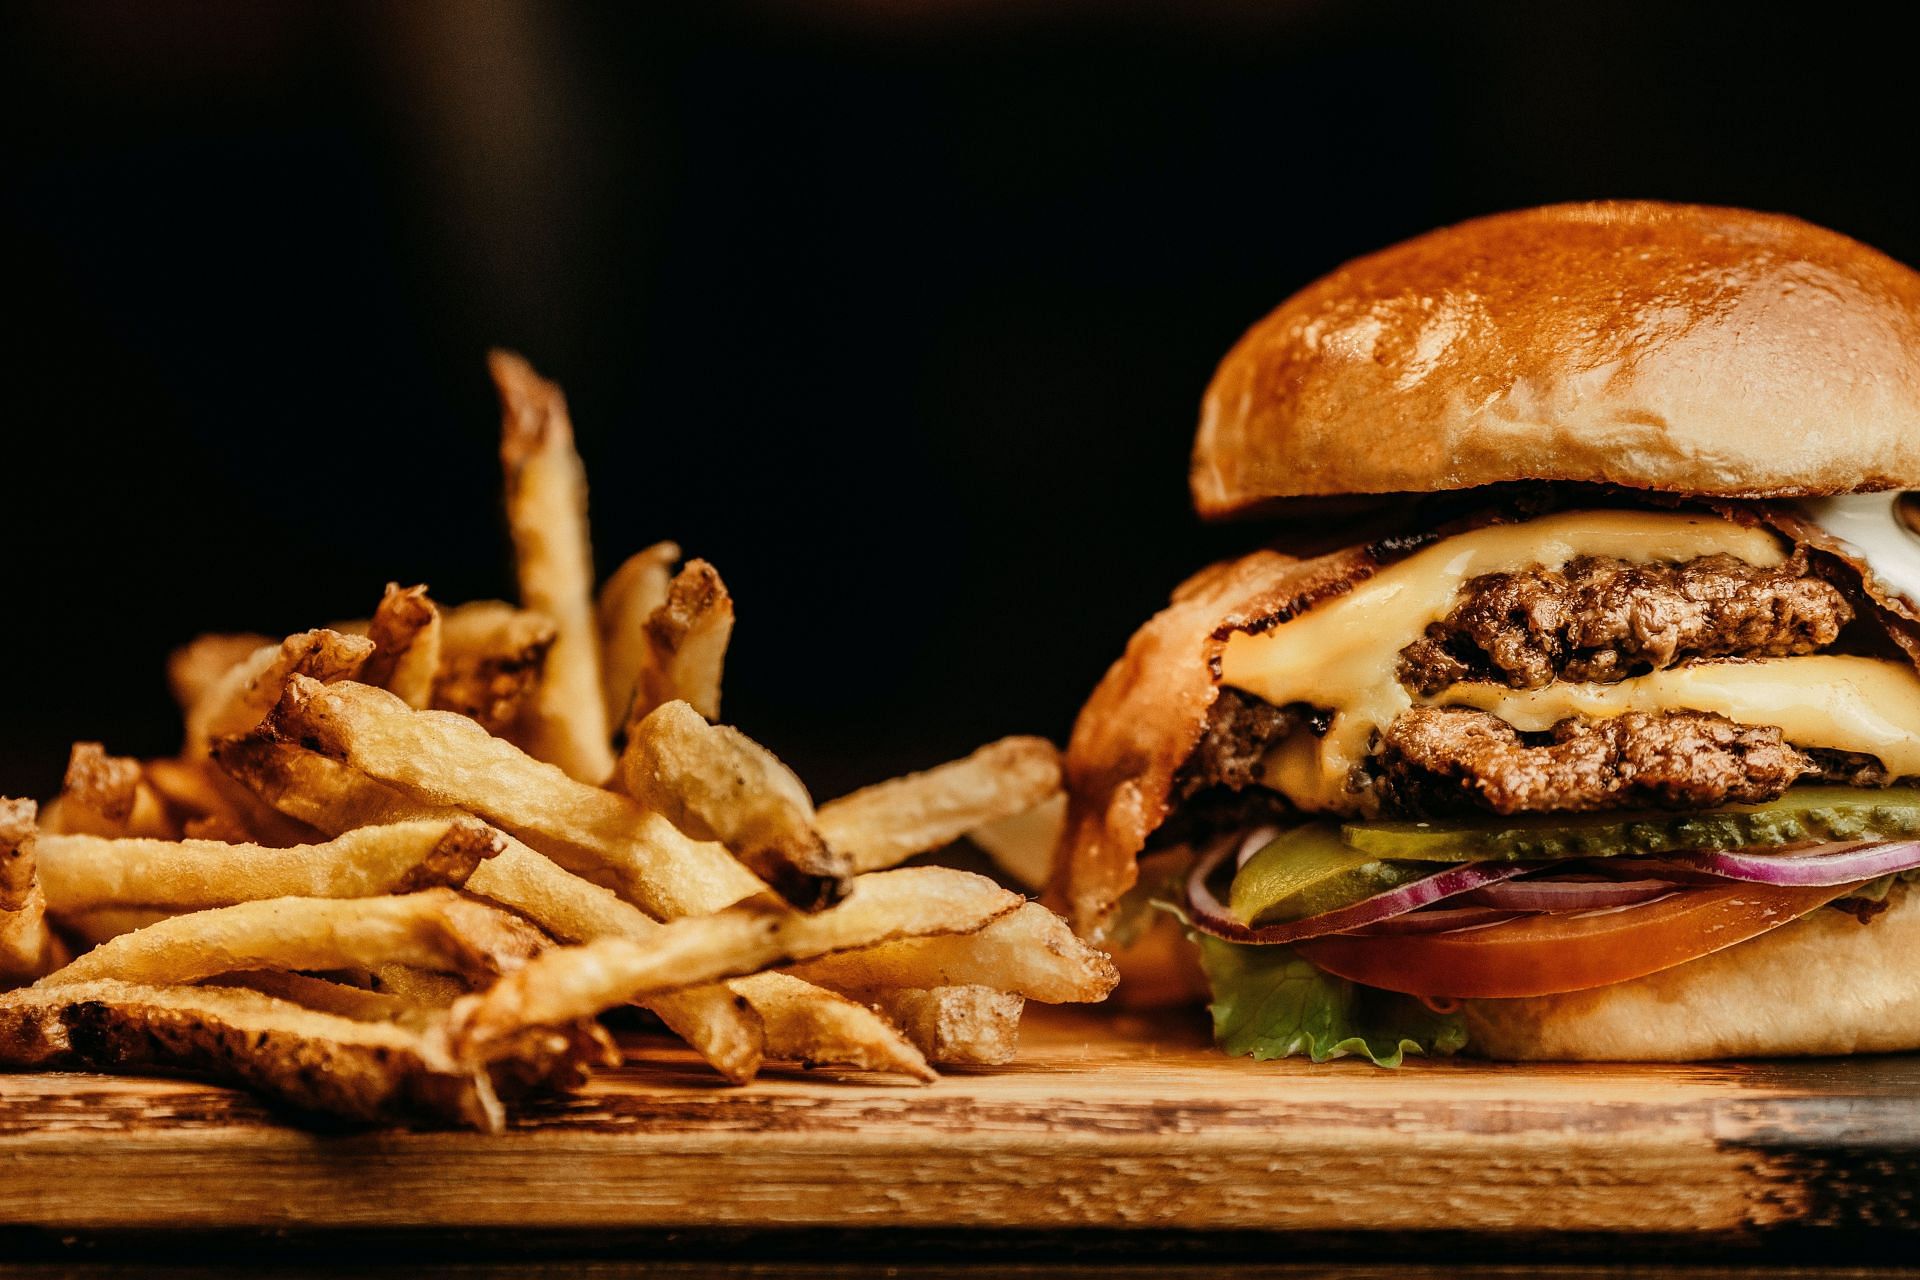 Hamburgers increas cholesterol level. (Image via Unsplash/Jonathan Borba)